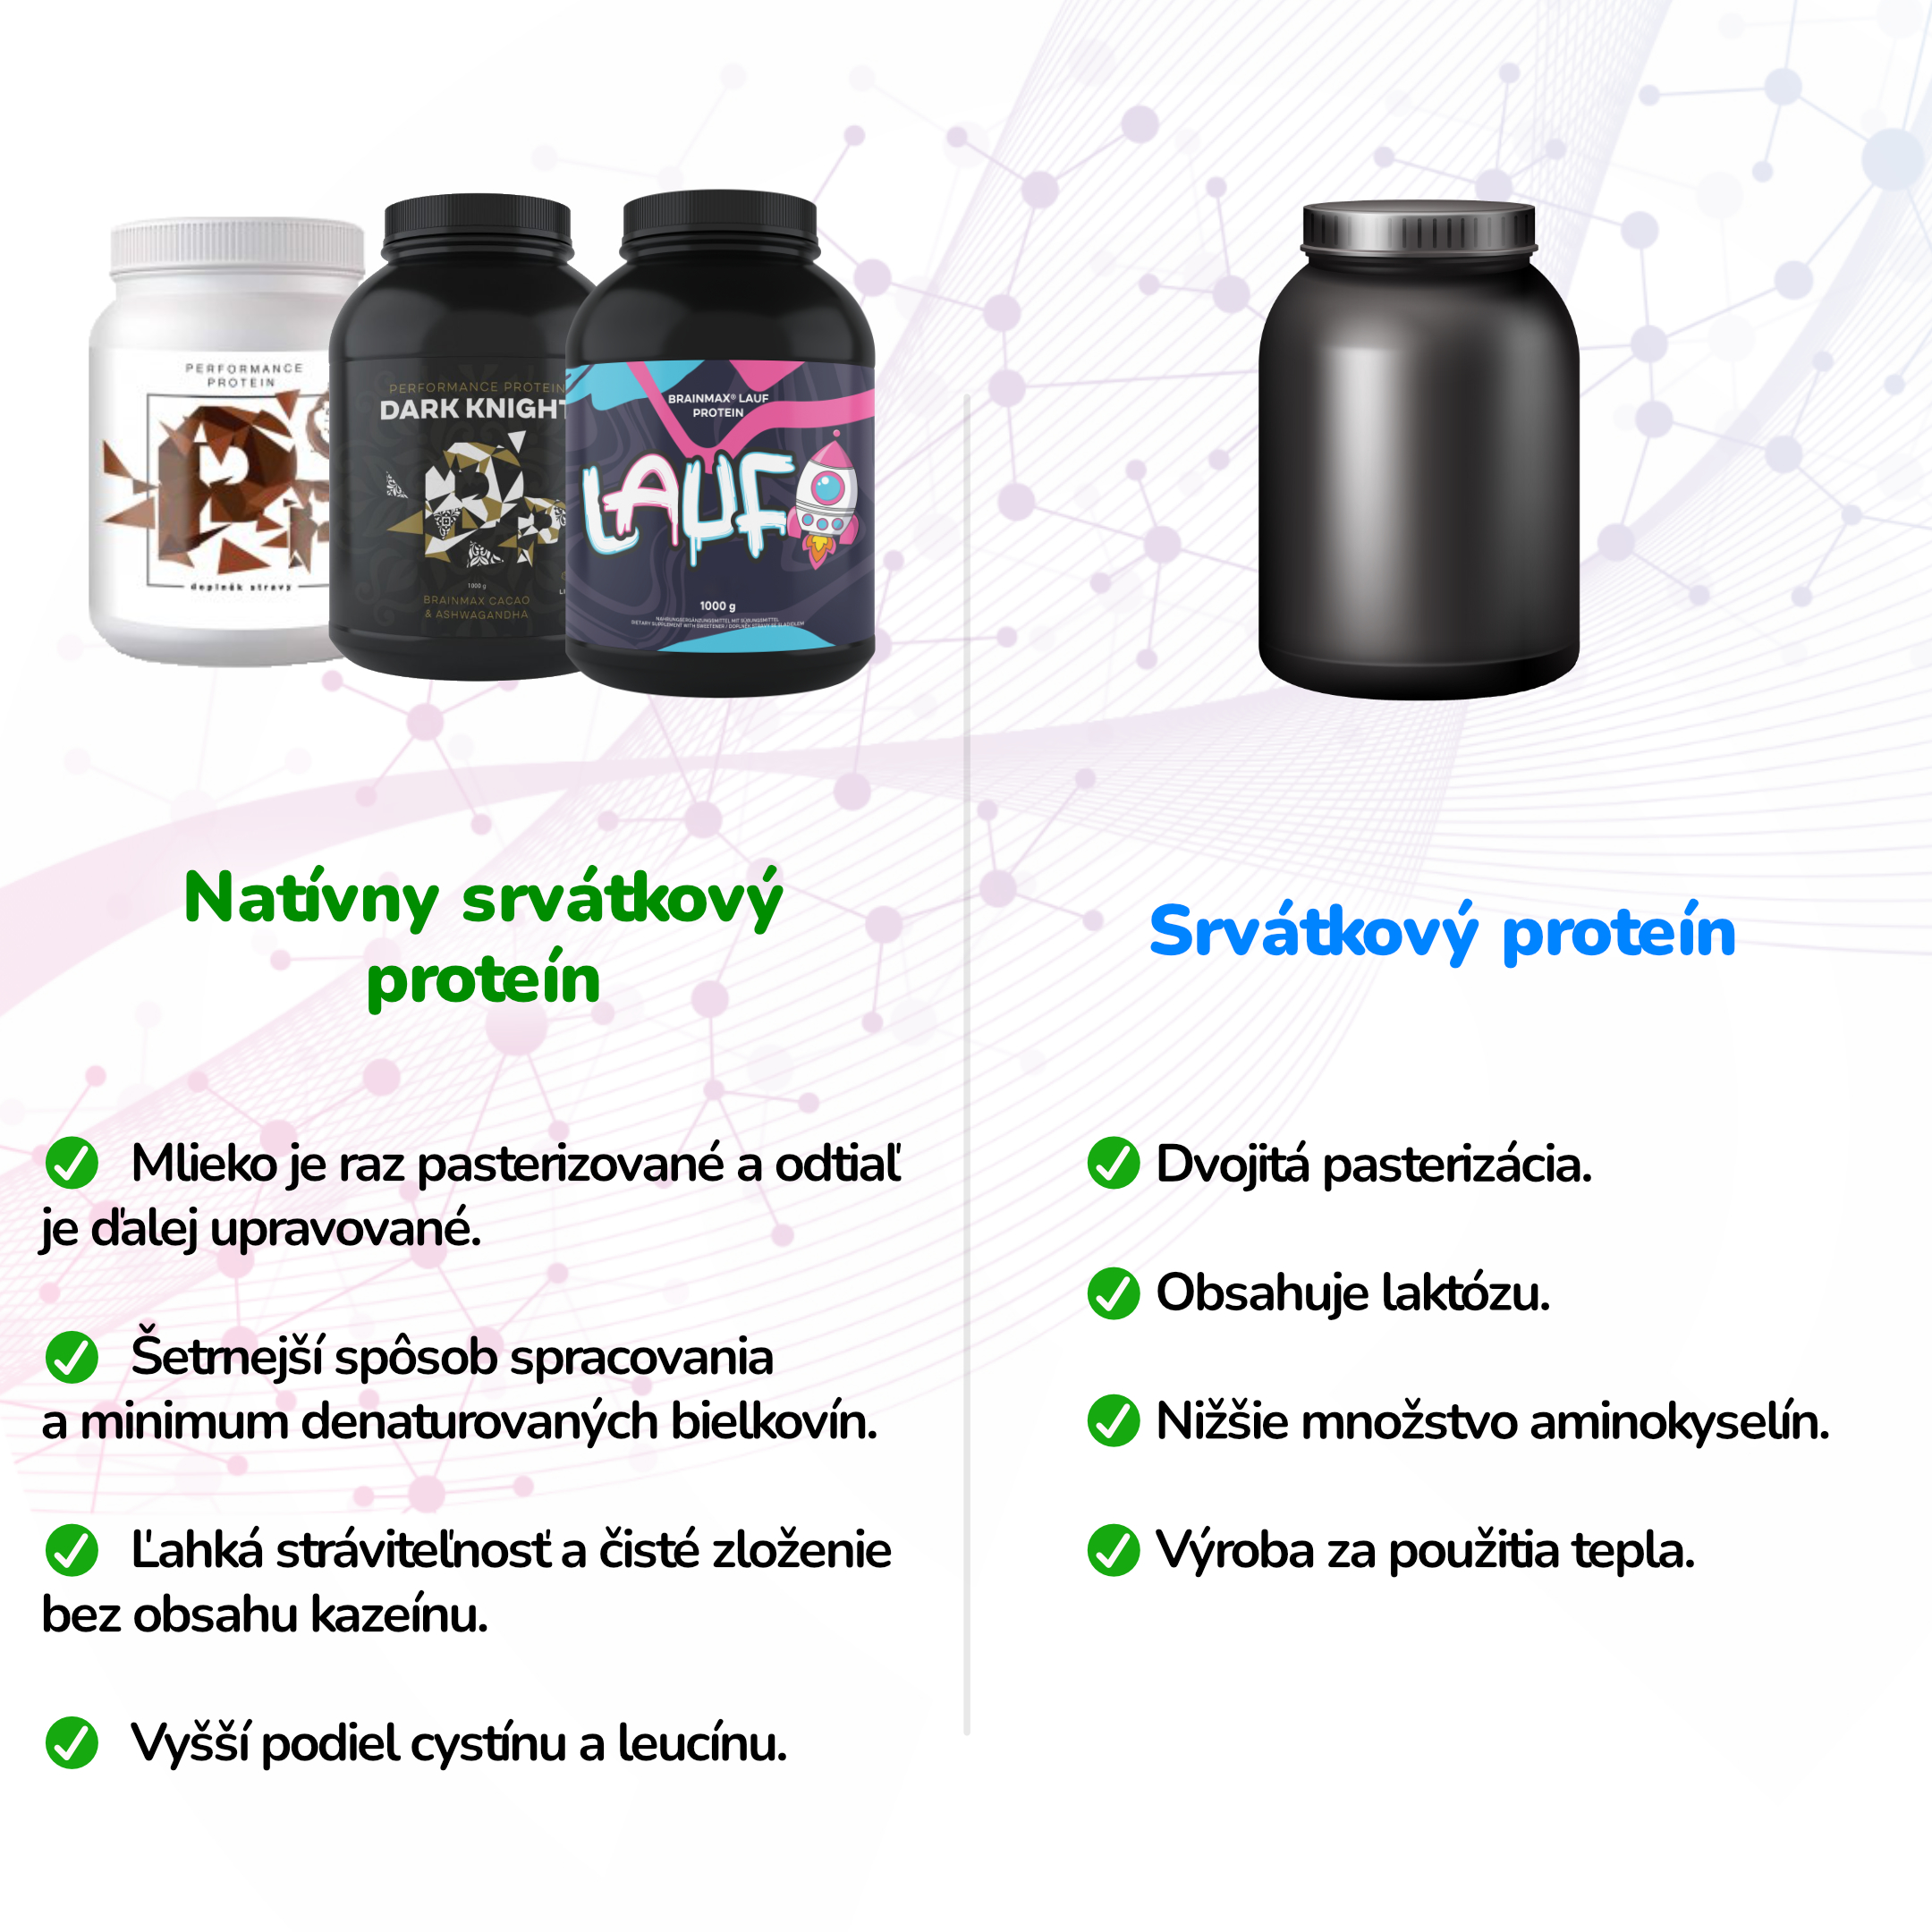 Natívny srvátkový proteín vs bežný srvátkový proteín. Výhody, výroba a rozdiel medzi nimi.